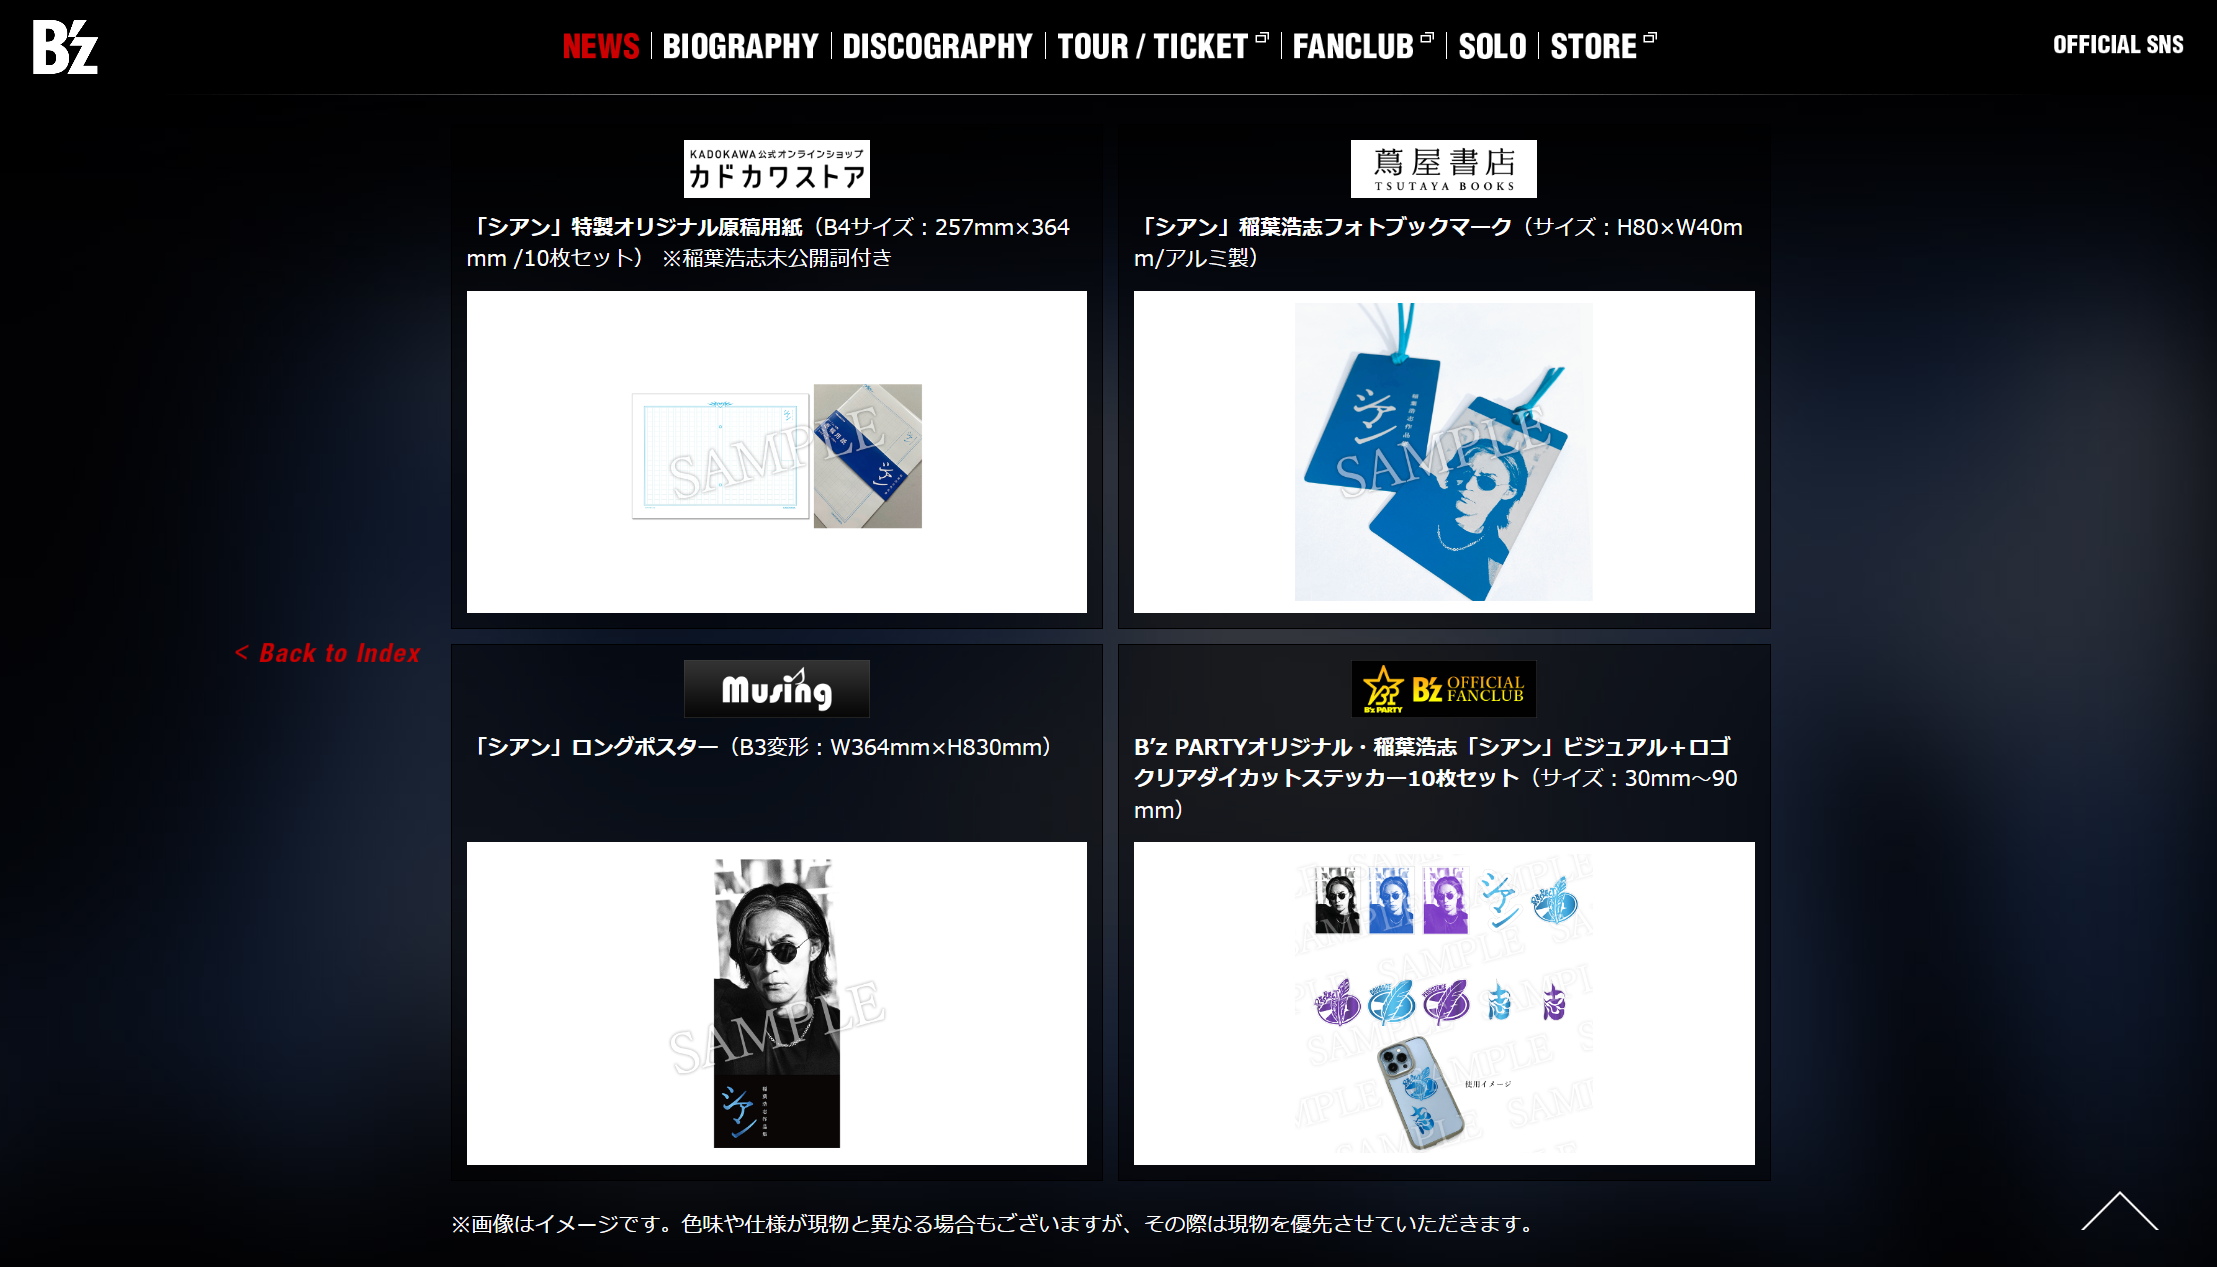 公式サイトで公開された稲葉浩志作品集『シアン 特装版』特典ビジュアルのキャプチャ画像